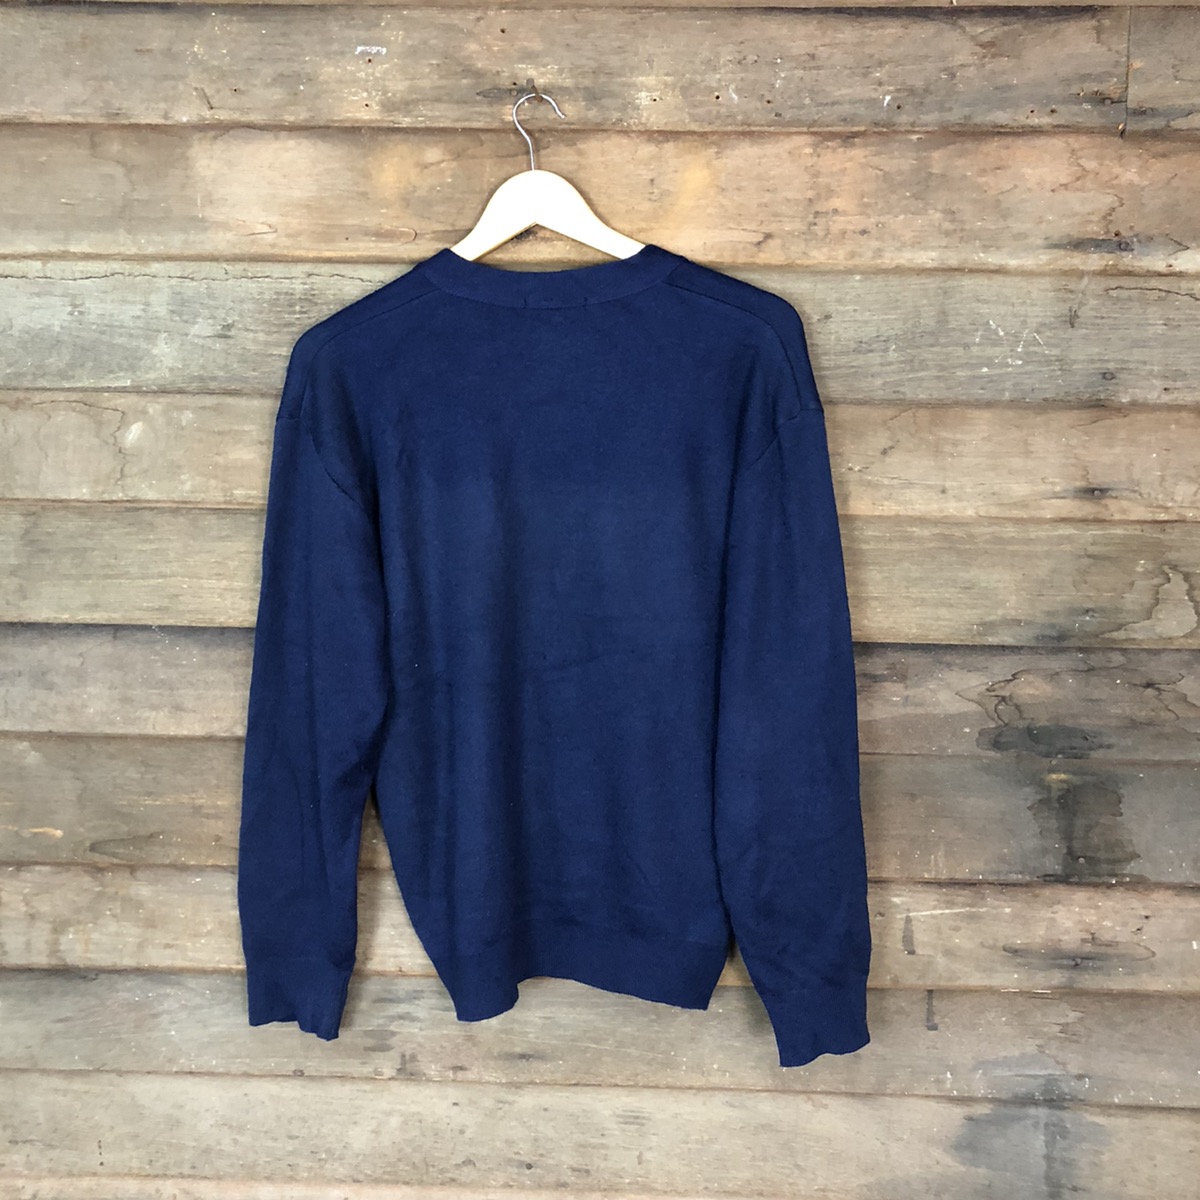 Cardigan - Superior Mind Dark blue Cardigan knitwear #5007 - 9